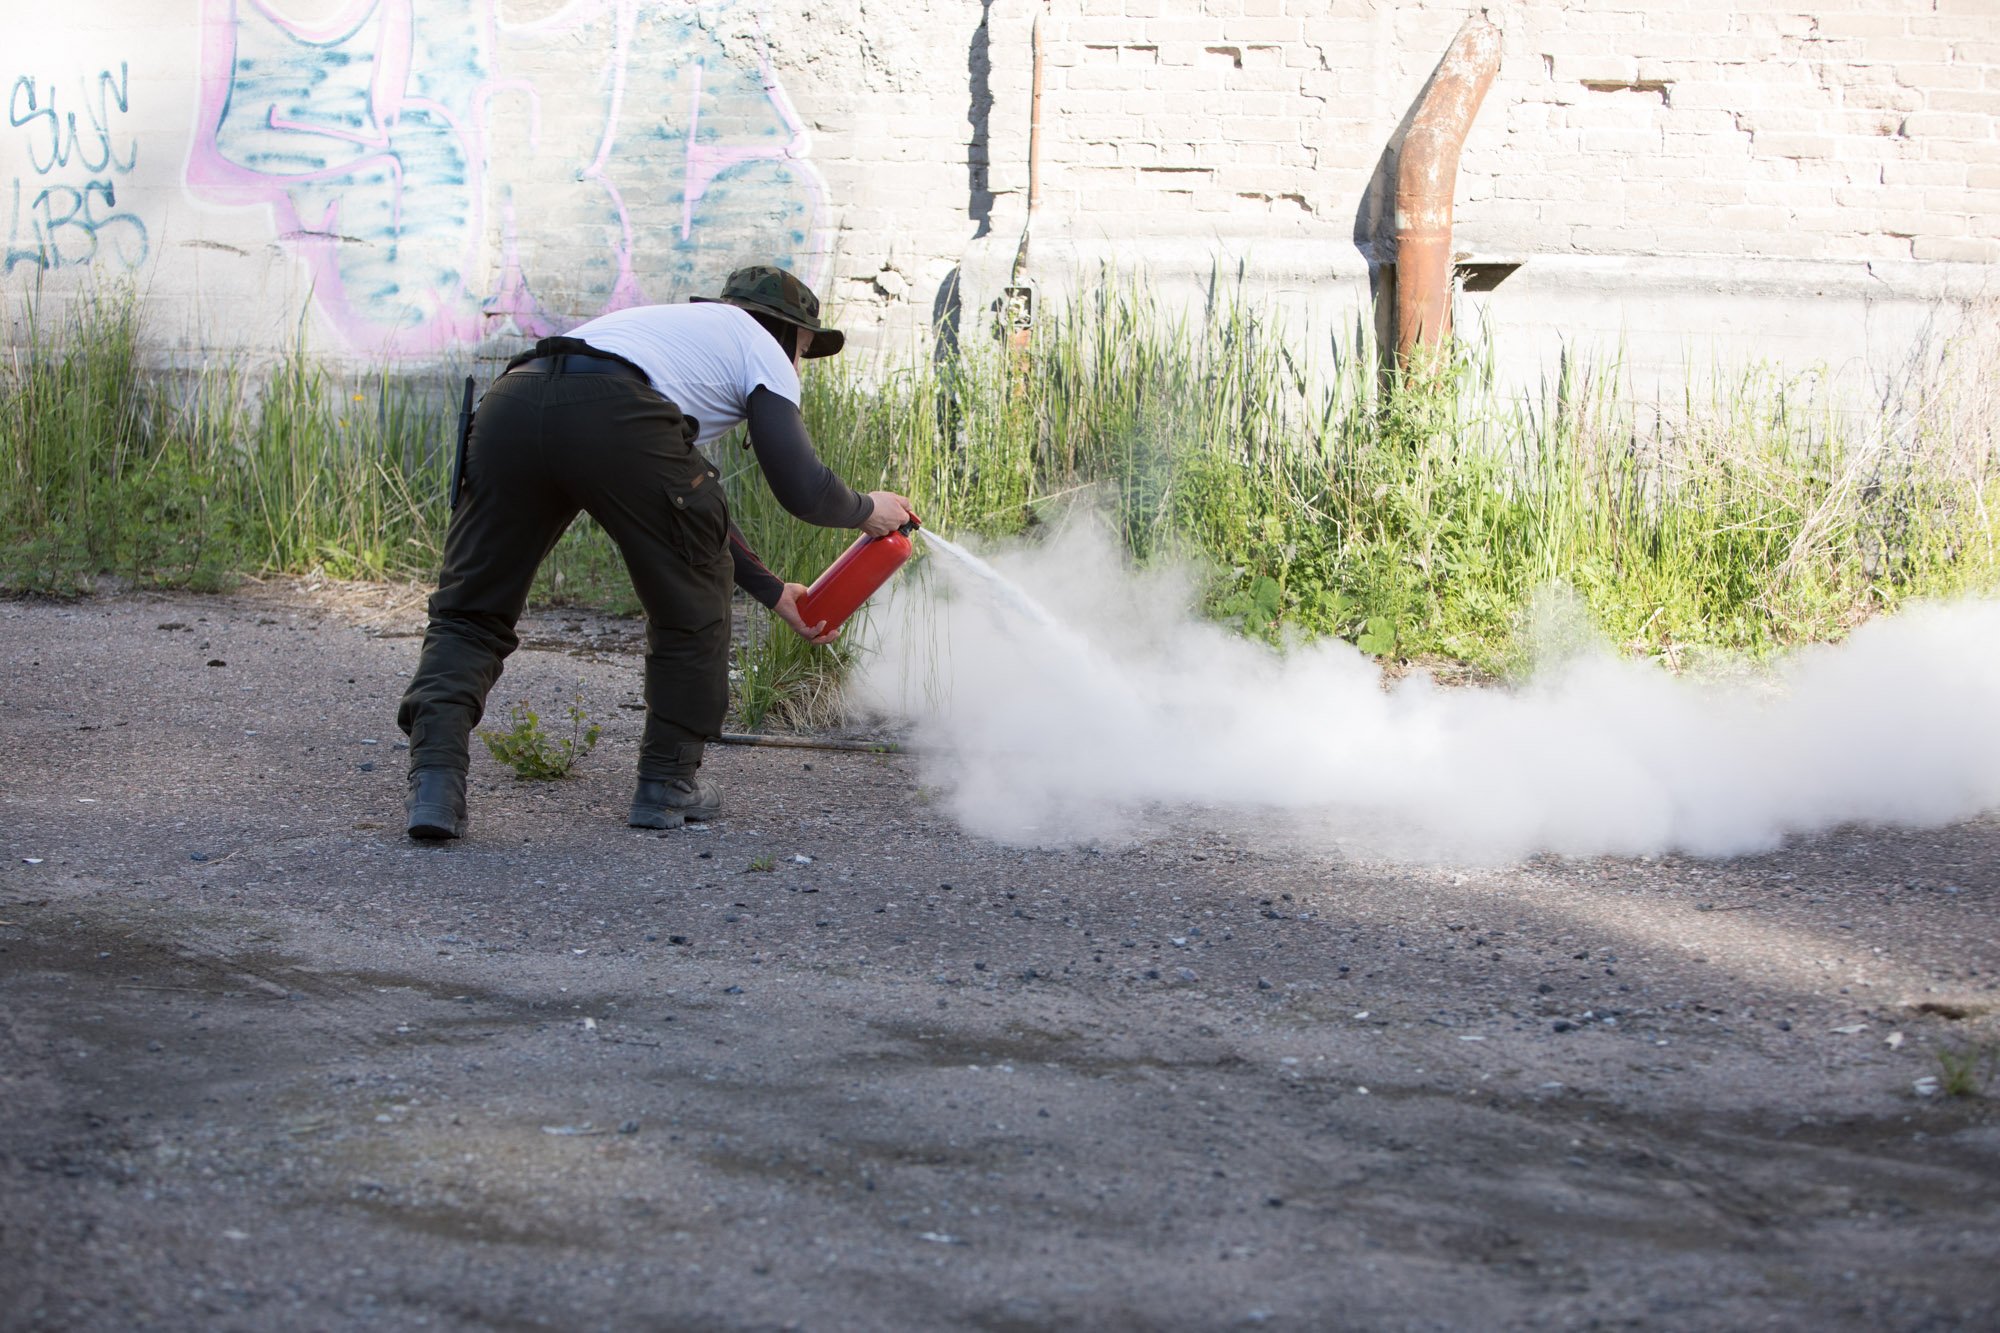 Training to use the powder extinguisher